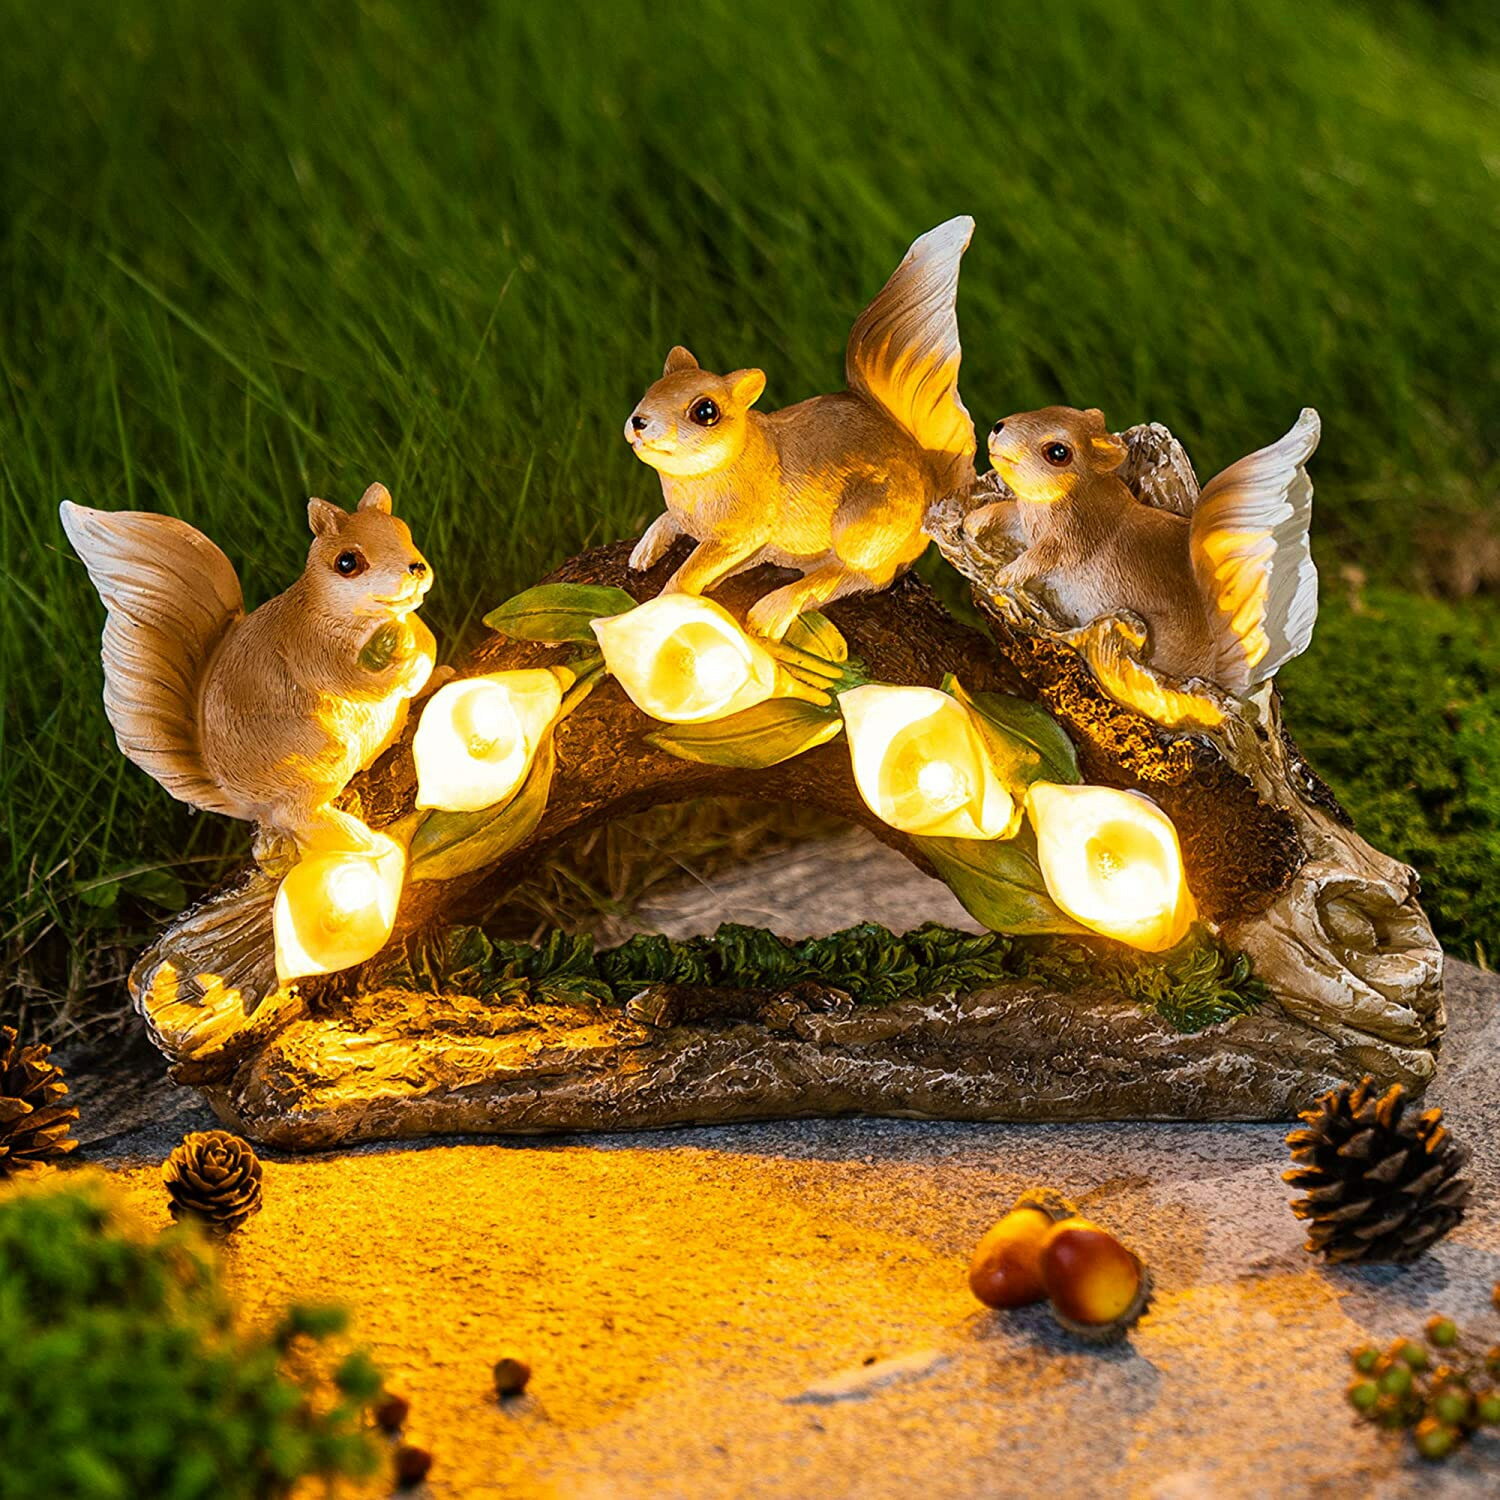 戶外太陽能樹脂花園擺件燈三只松鼠工藝品仿真動物園藝草坪裝飾燈